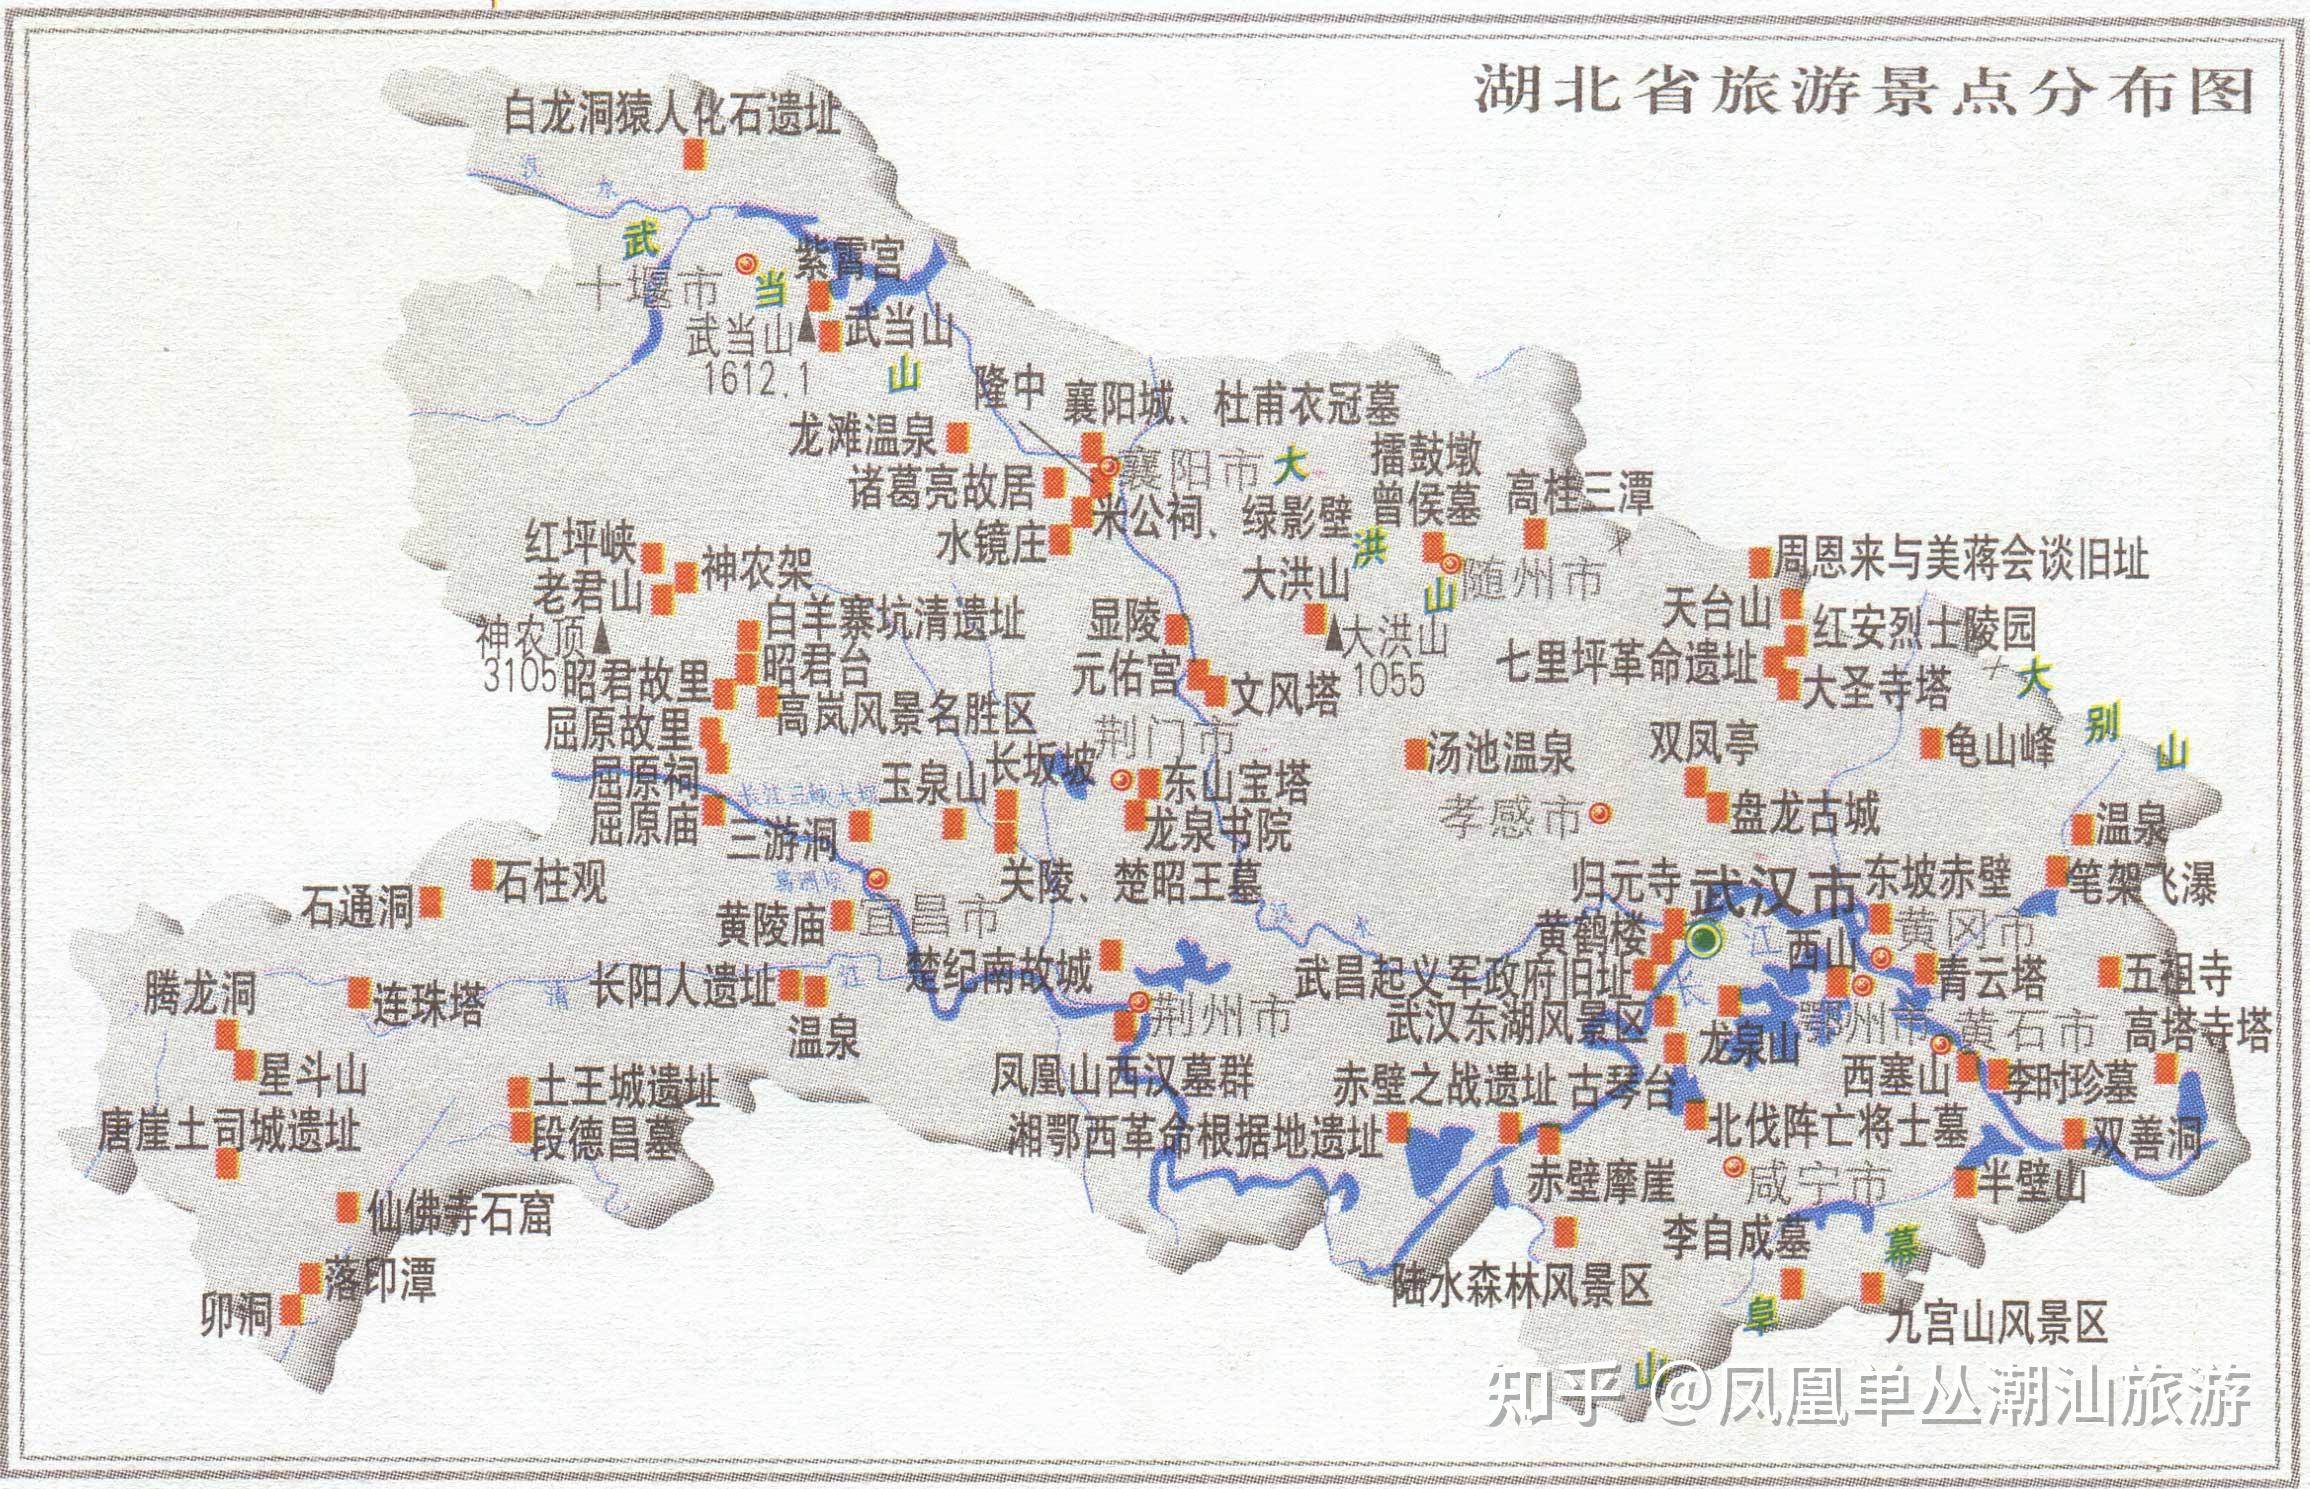 中国最美旅游景点高清地图汇聚34省区3000多个景点可下载收藏